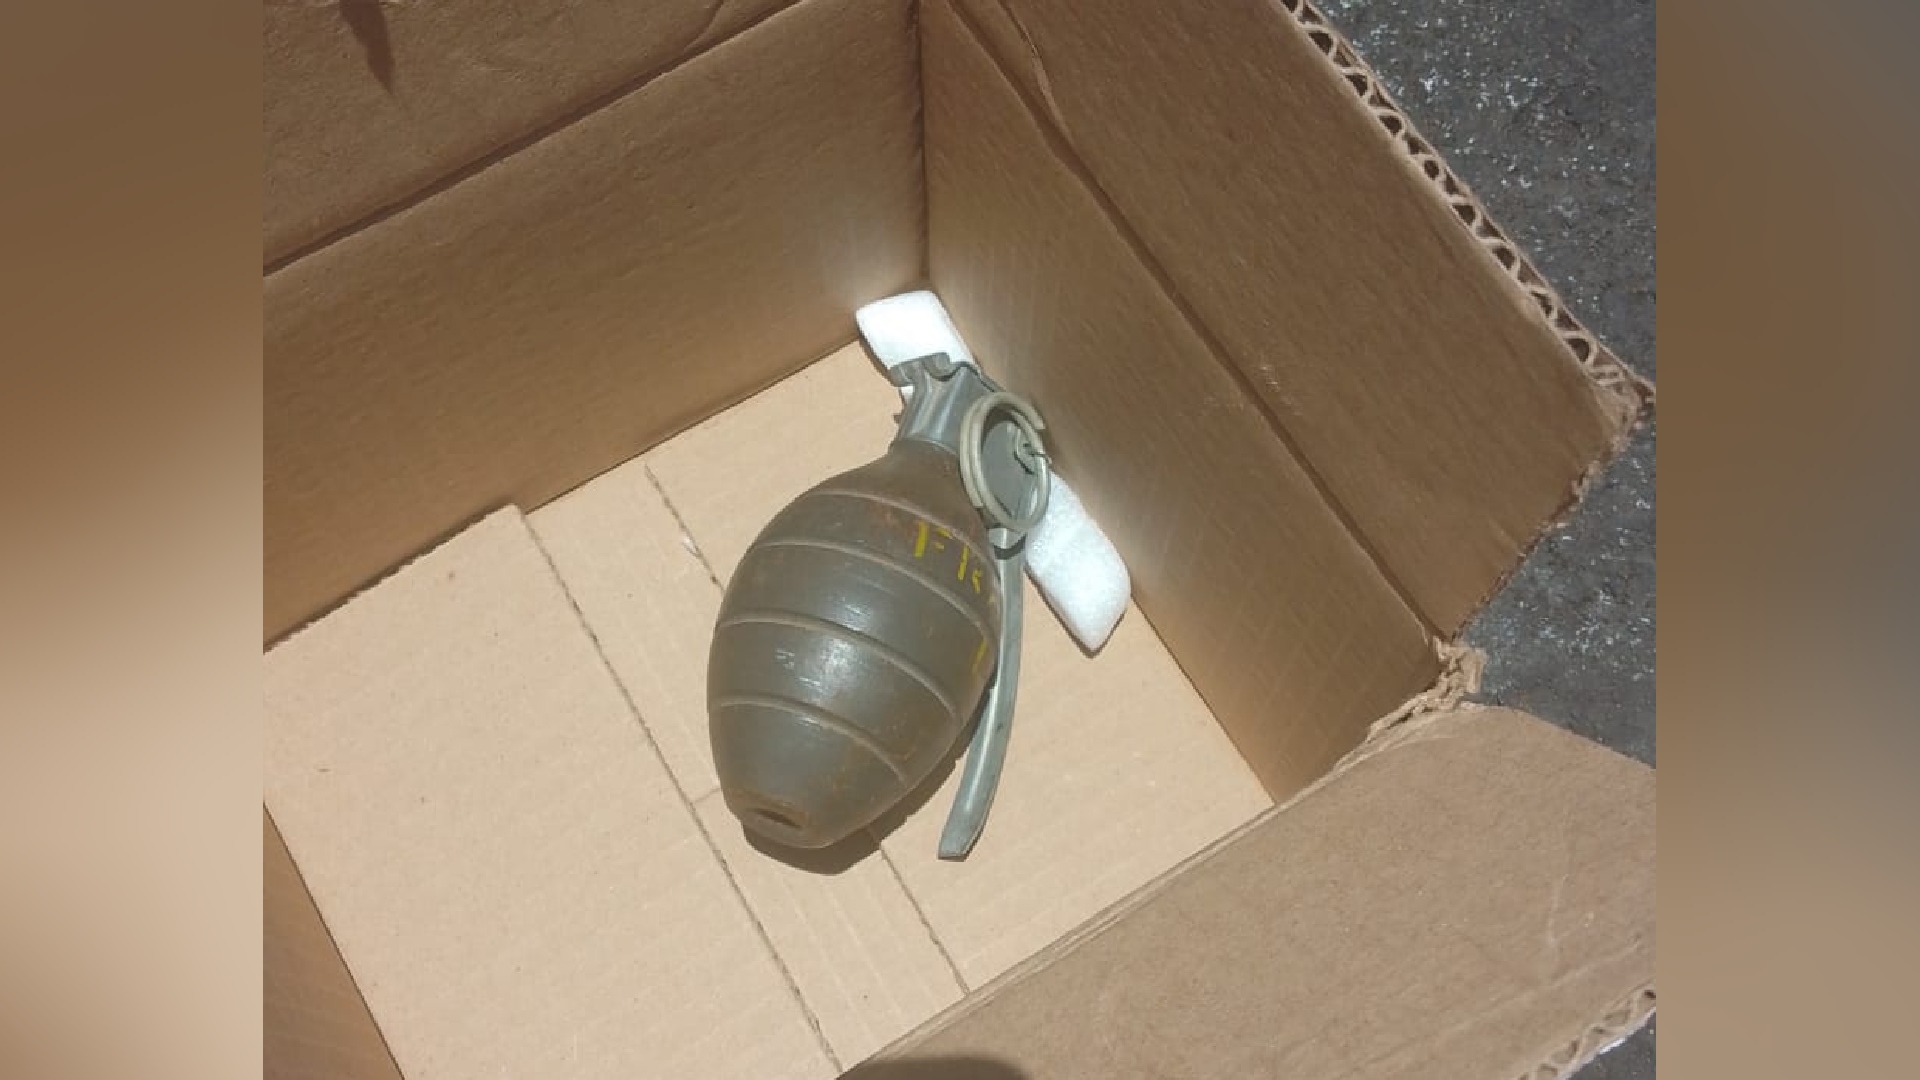 Trabajadores de Limpia de la CDMX encontraron una granada explosiva entre la basura